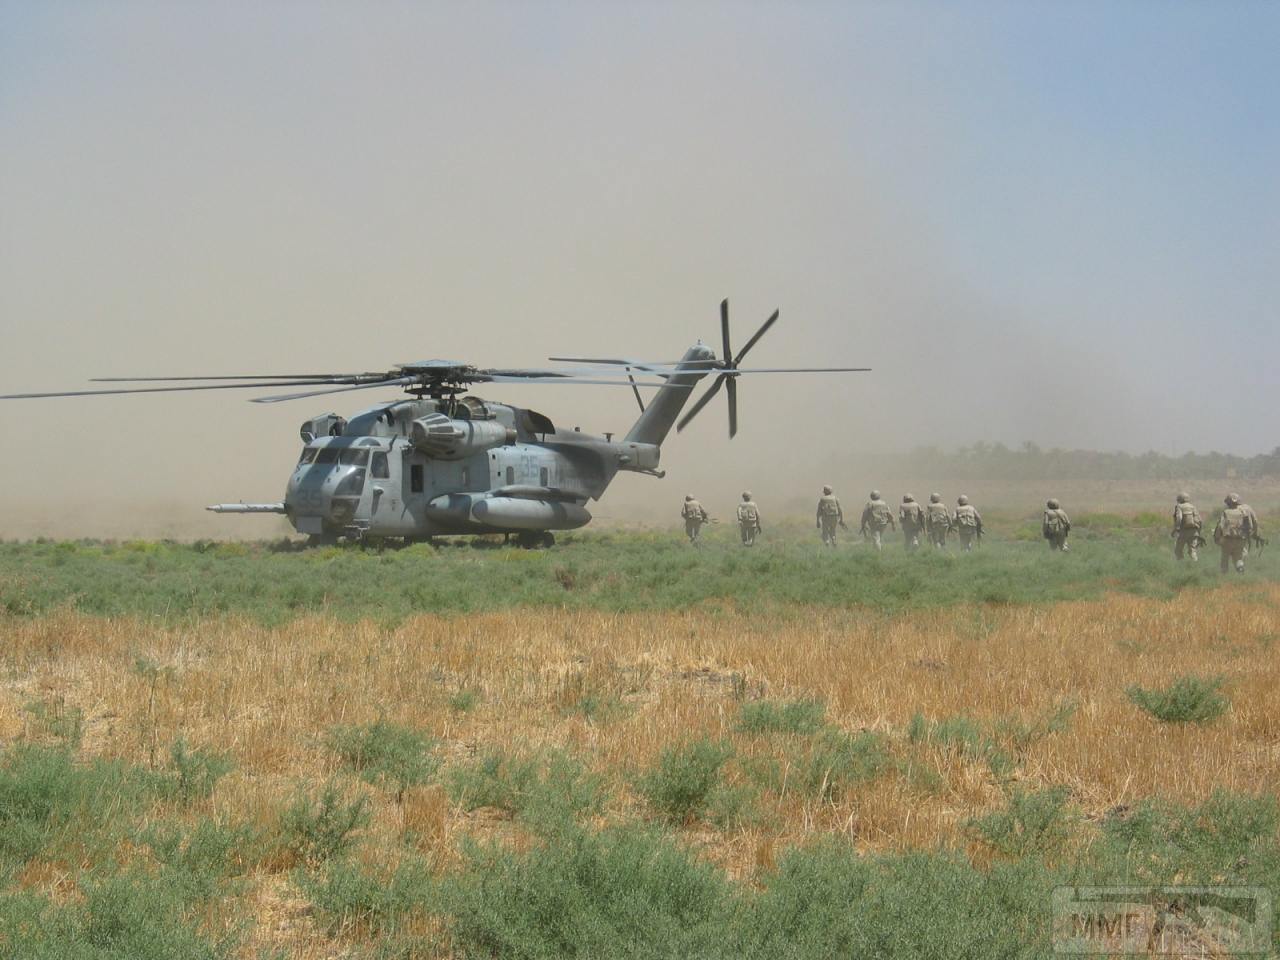 31425 - Участие ВСУ в миротворческой миссии в Ираке 2003-2008г.г.